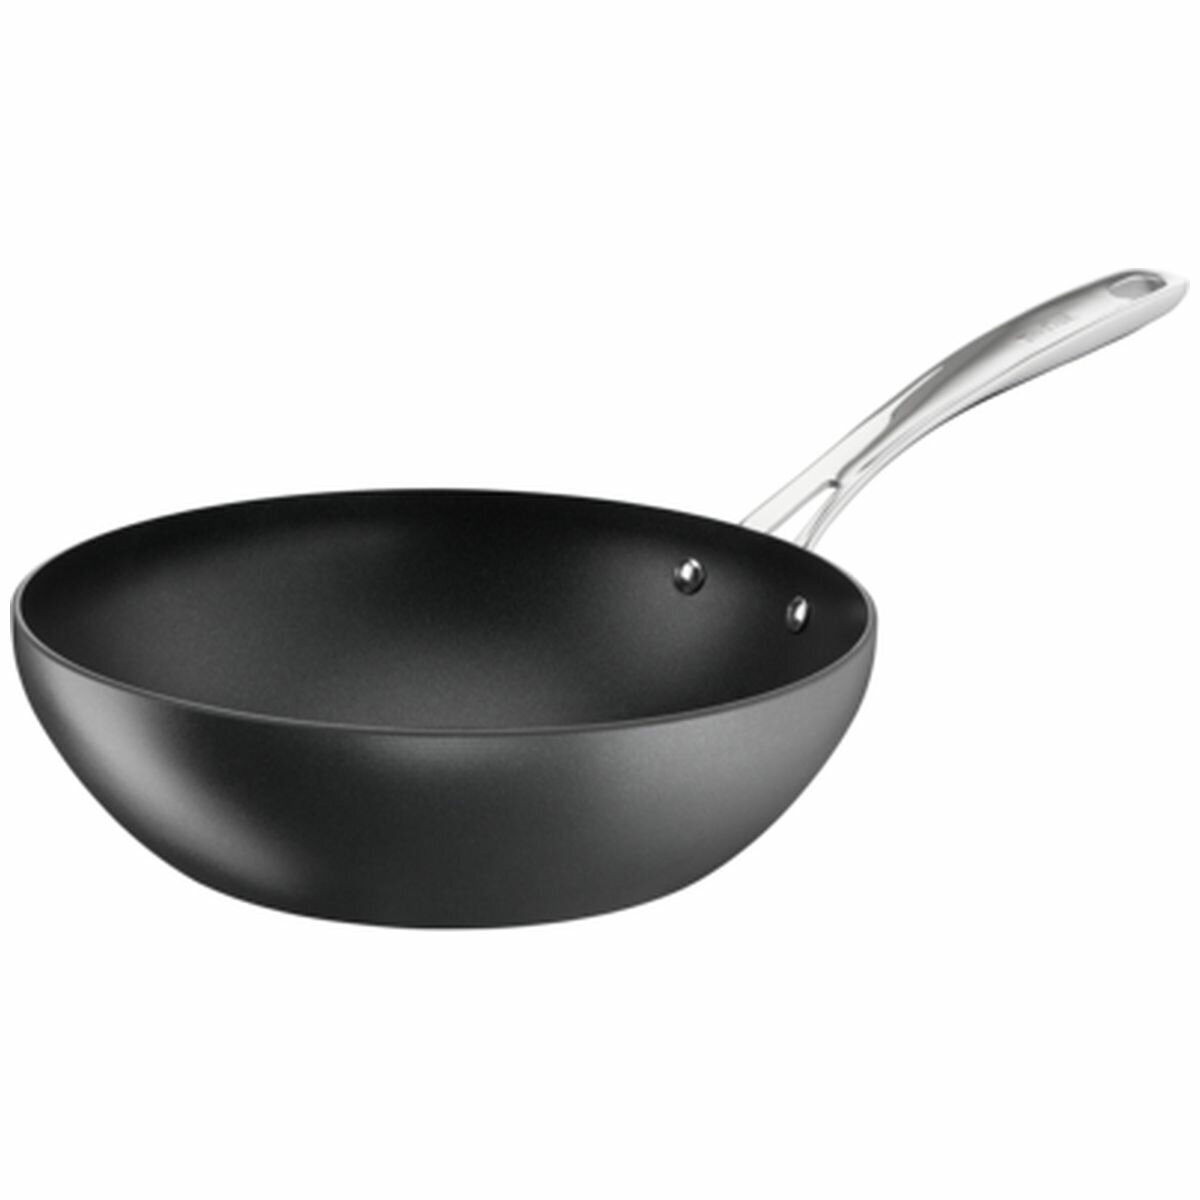 Tefal Cook N' Clean 28cm Black Wok Pan with Lid